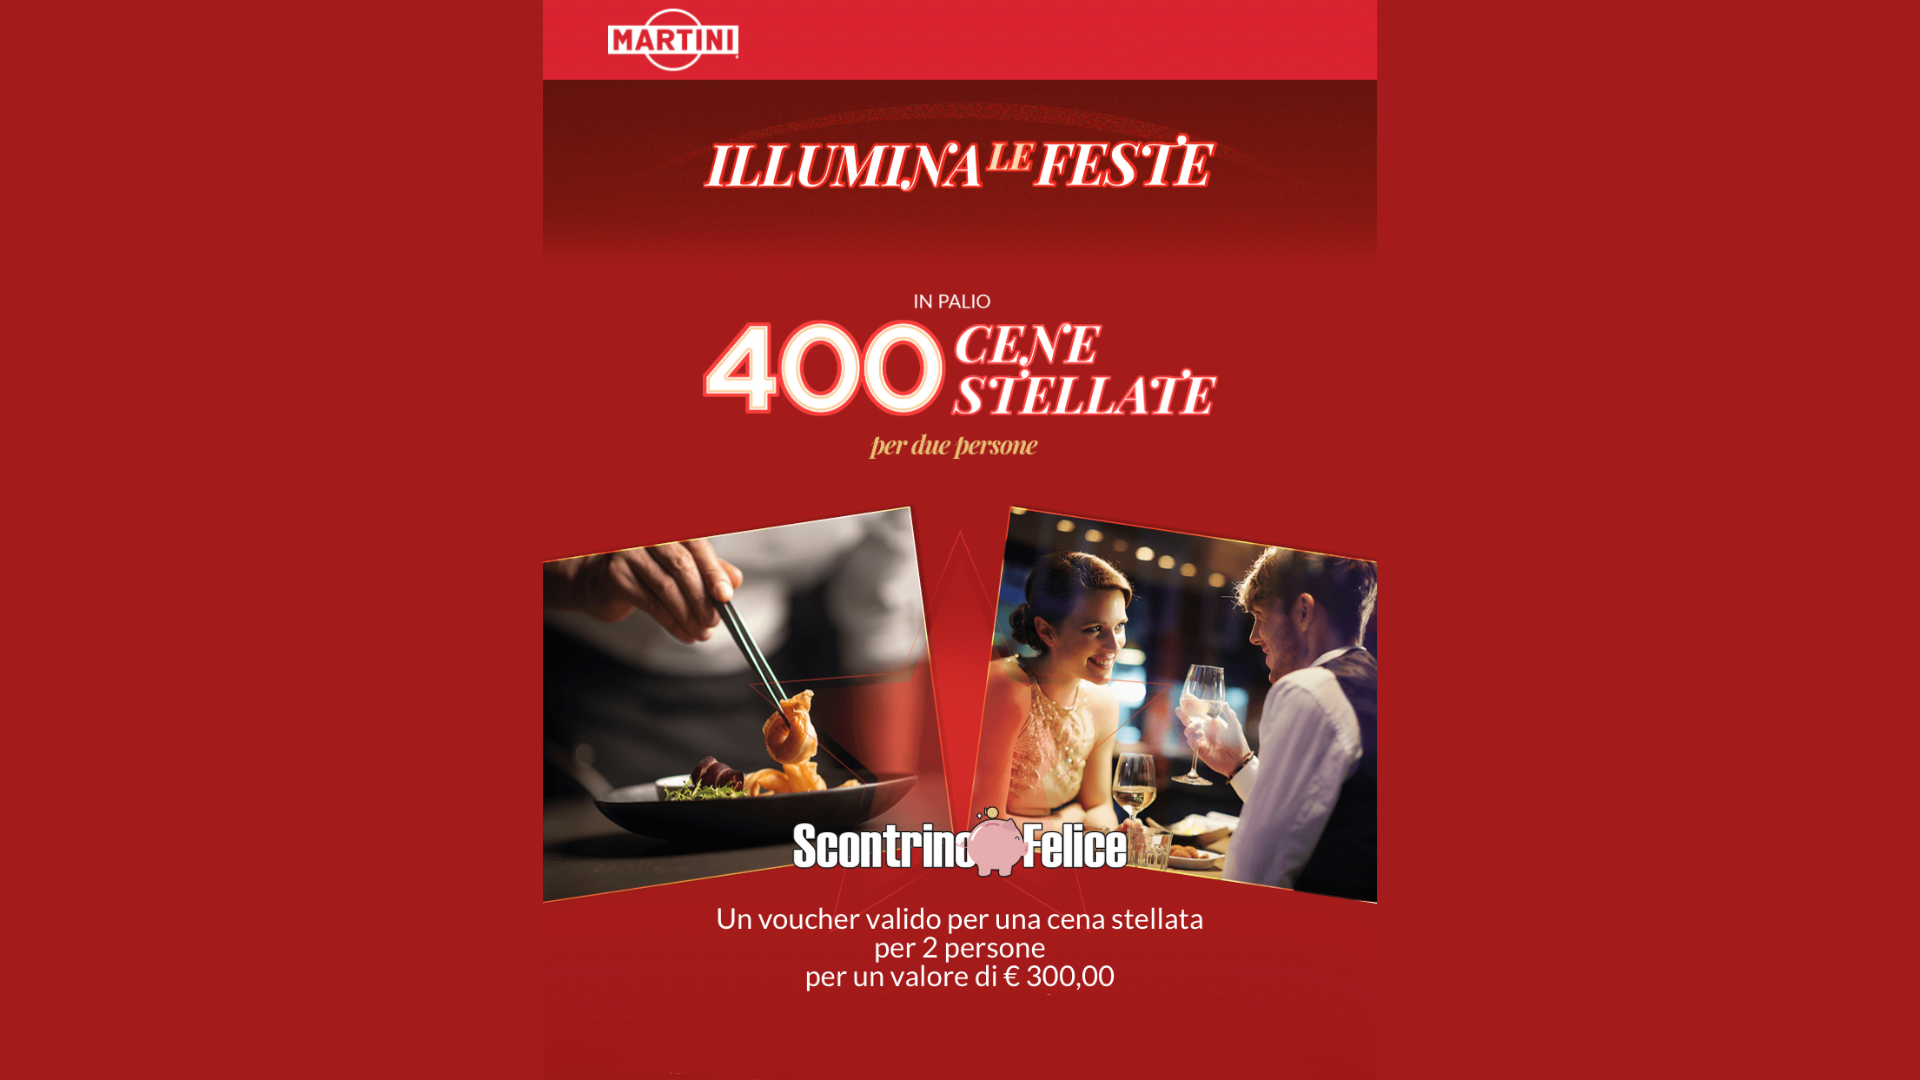 Concorso Martini “Illumina le feste”: vinci 400 cene stellate 1